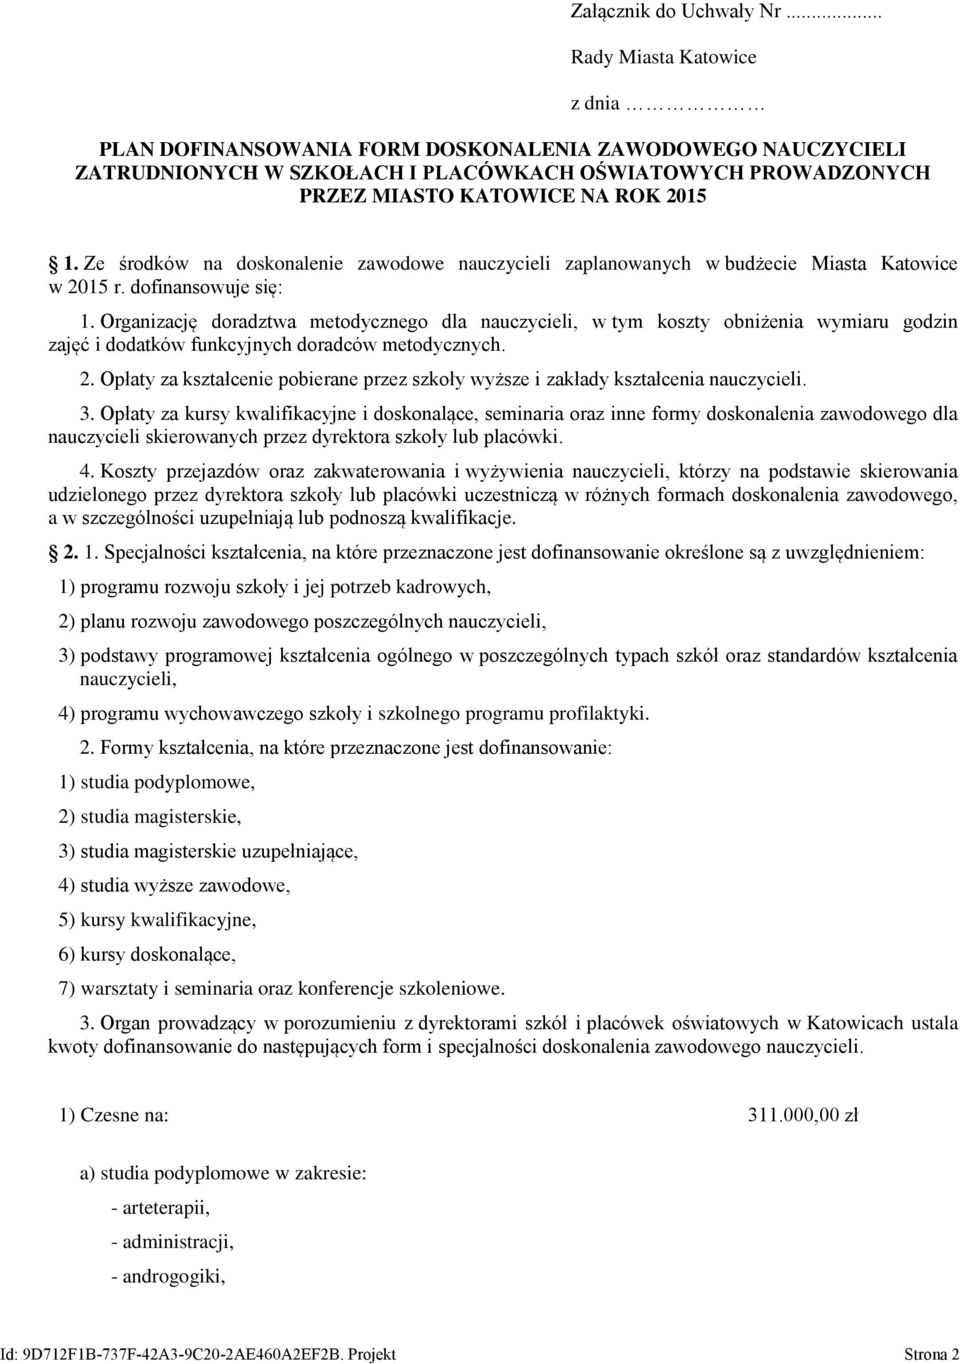 Ze środków na doskonalenie zawodowe nauczycieli zaplanowanych w budżecie Miasta Katowice w 2015 r. dofinansowuje się: 1.